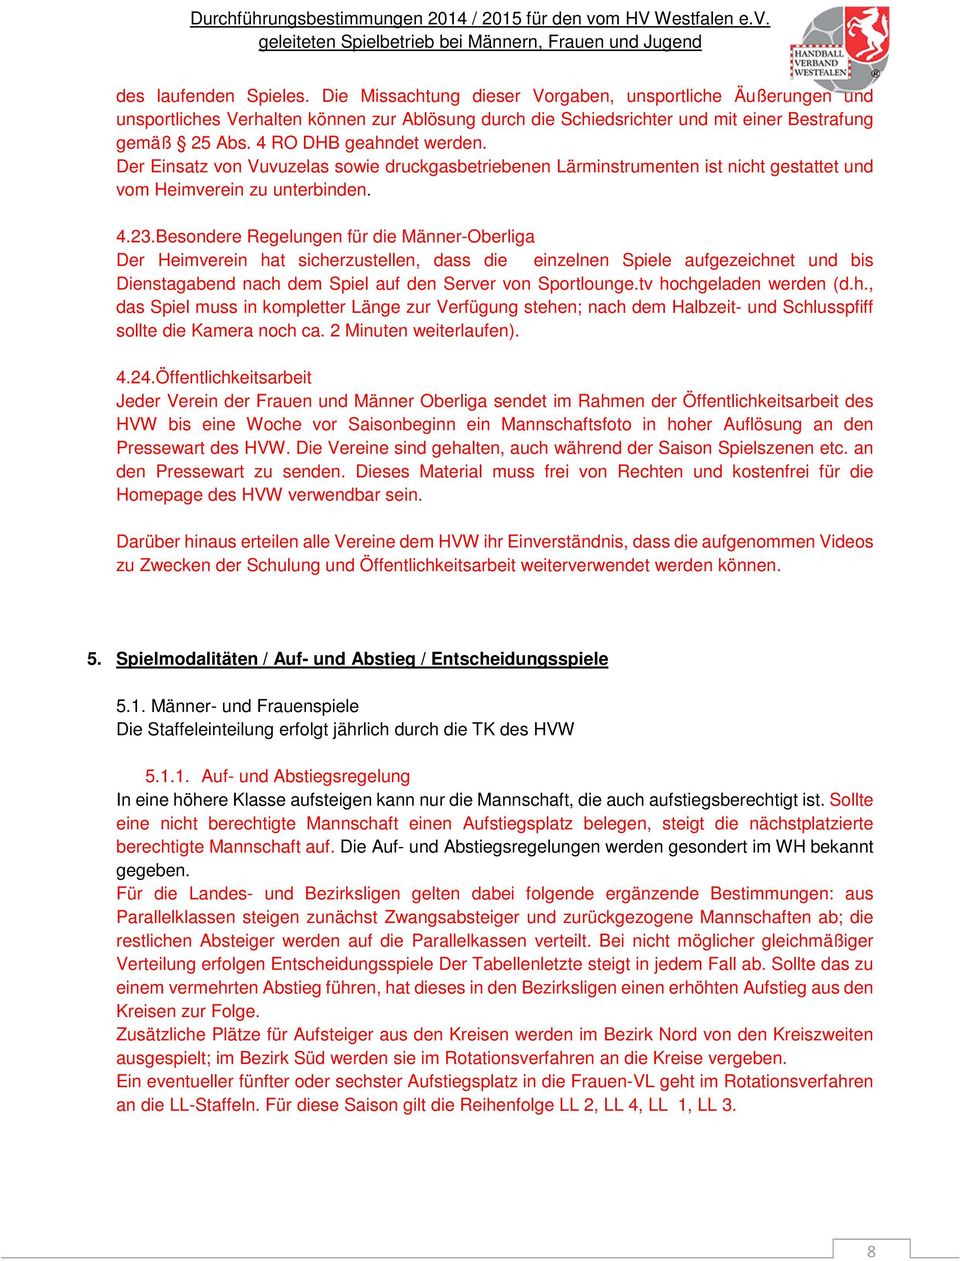 Besondere Regelungen für die Männer-Oberliga Der Heimverein hat sicherzustellen, dass die einzelnen Spiele aufgezeichnet und bis Dienstagabend nach dem Spiel auf den Server von Sportlounge.